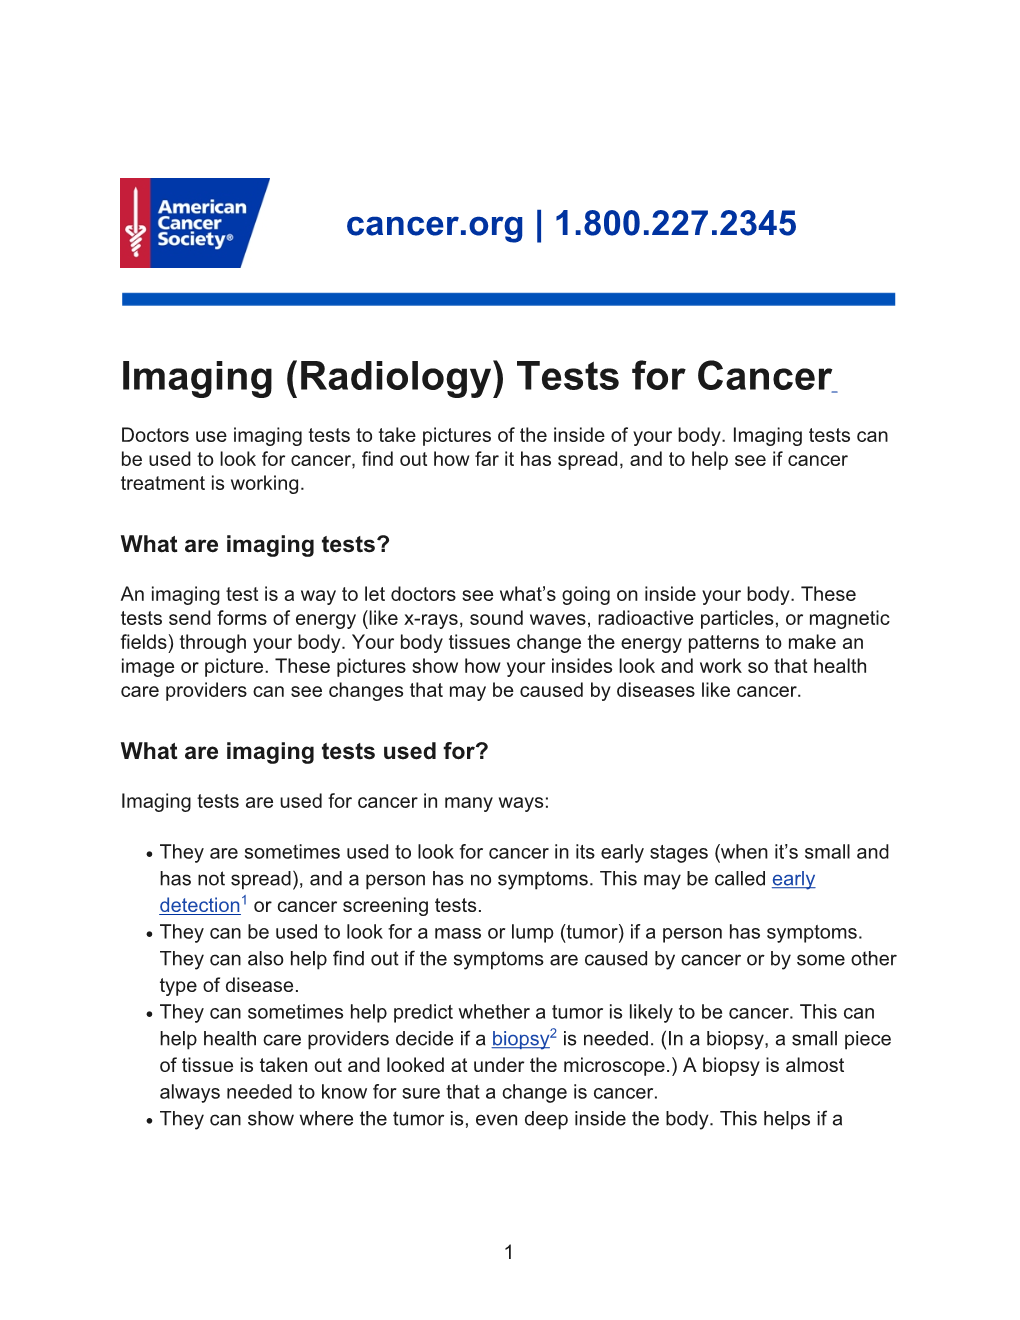 Imaging (Radiology) Tests for Cancer